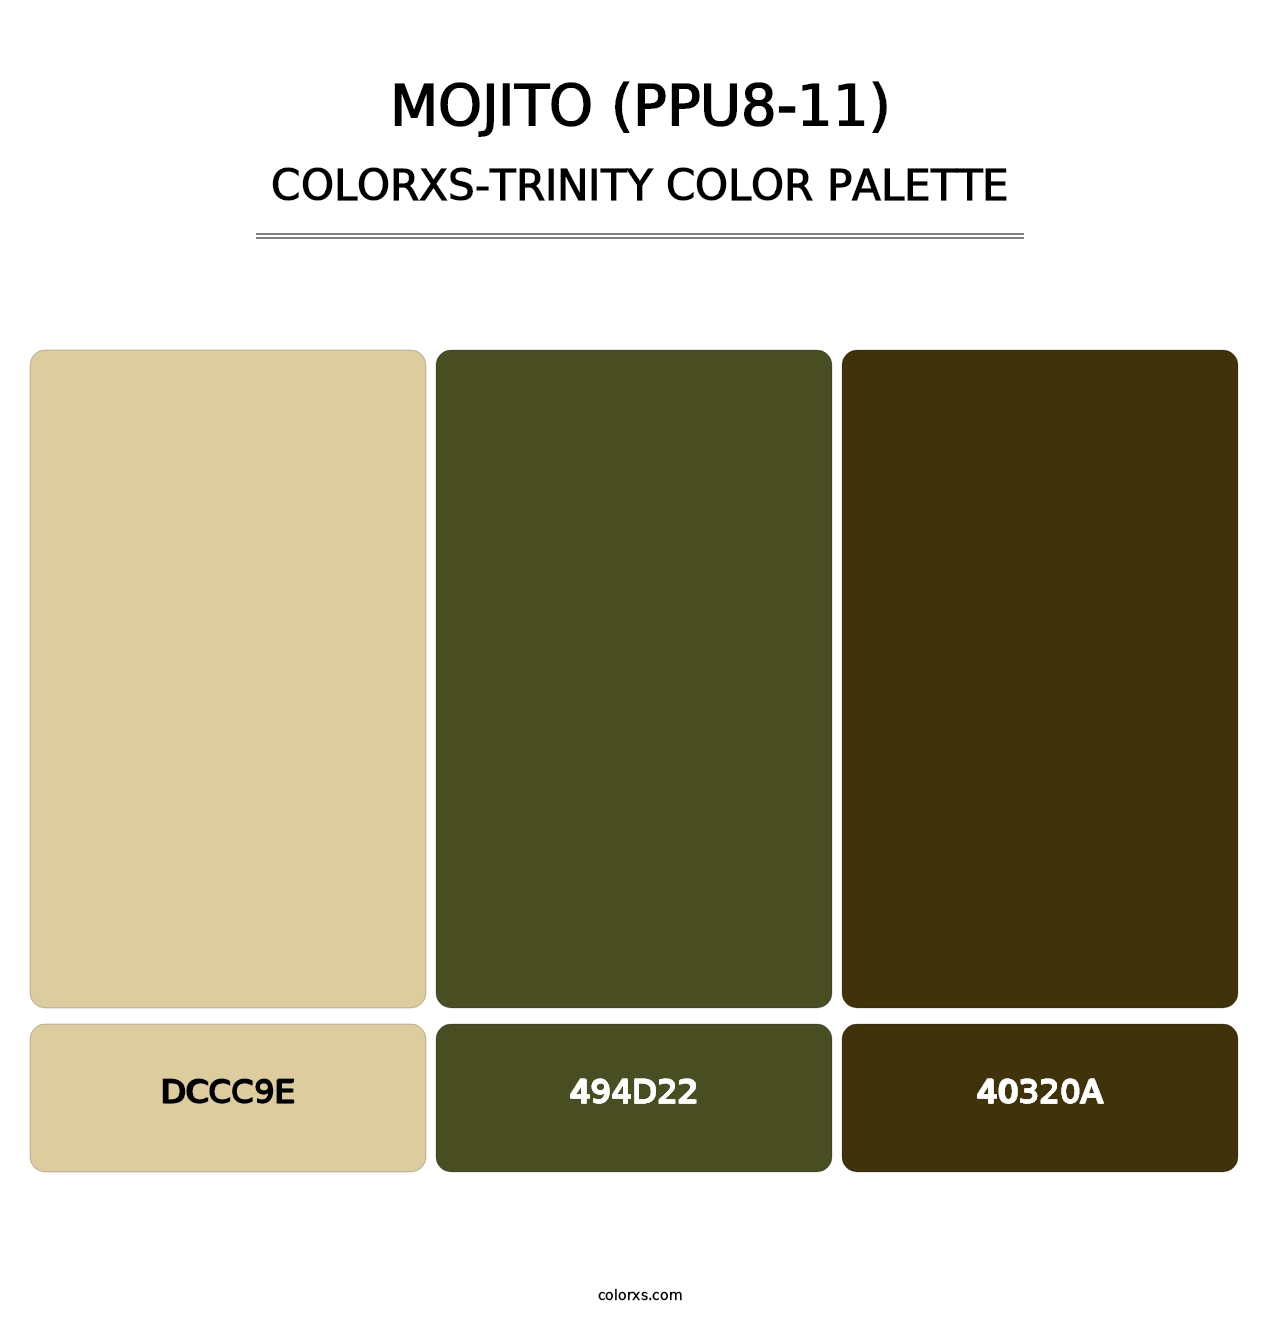 Mojito (PPU8-11) - Colorxs Trinity Palette